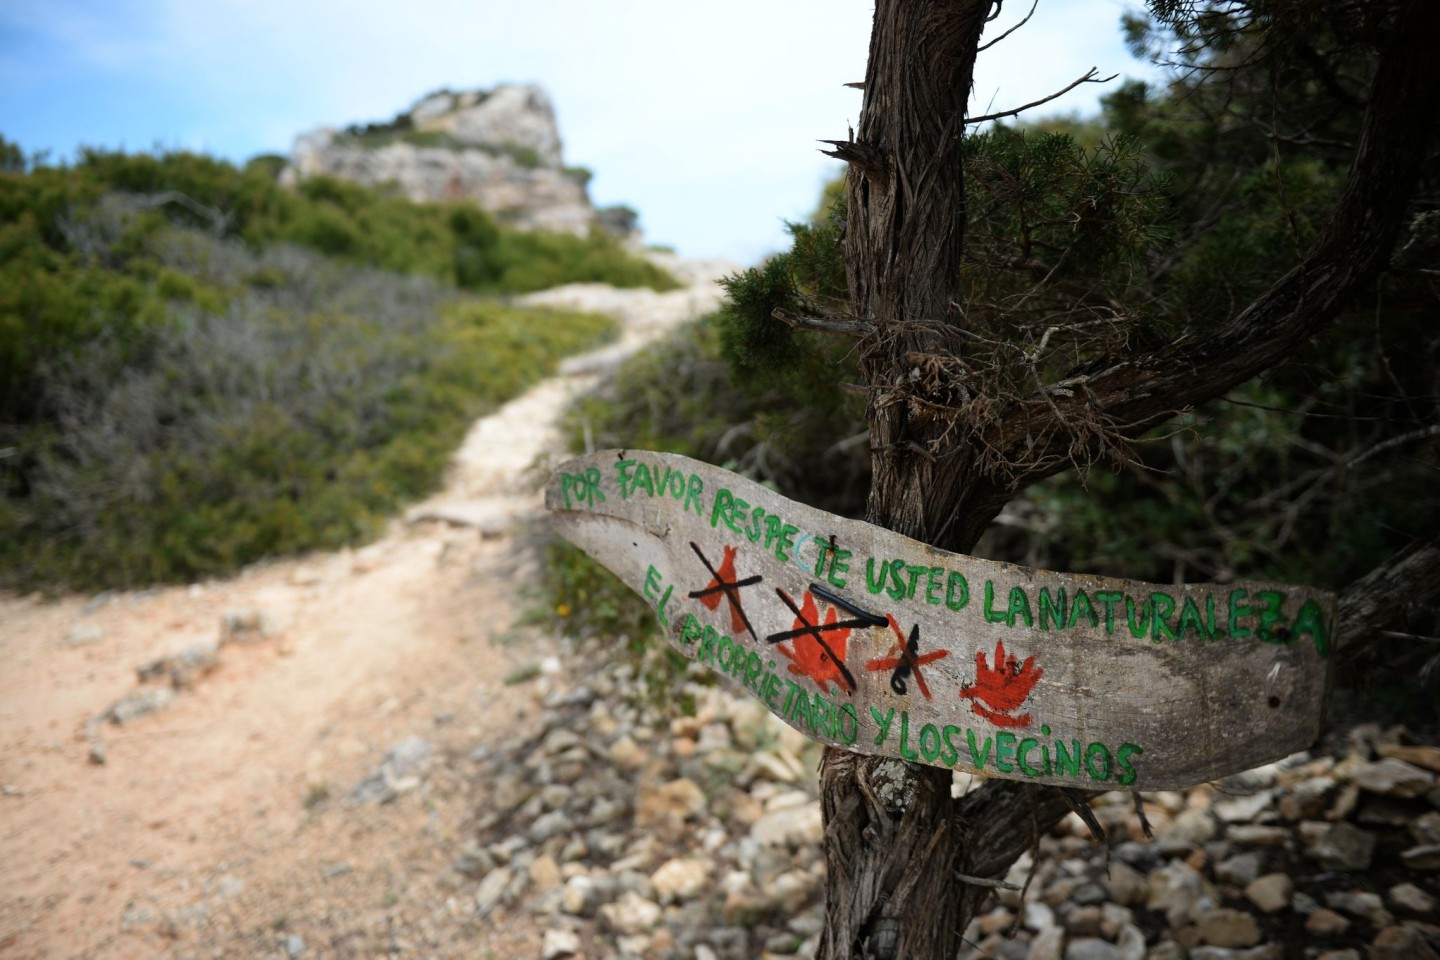 Ein Schild untersagt das Entzünden von Feuer, Lagerfeuer und Holzeinschlag bei Santanyi auf Mallorca (Symbolbild).